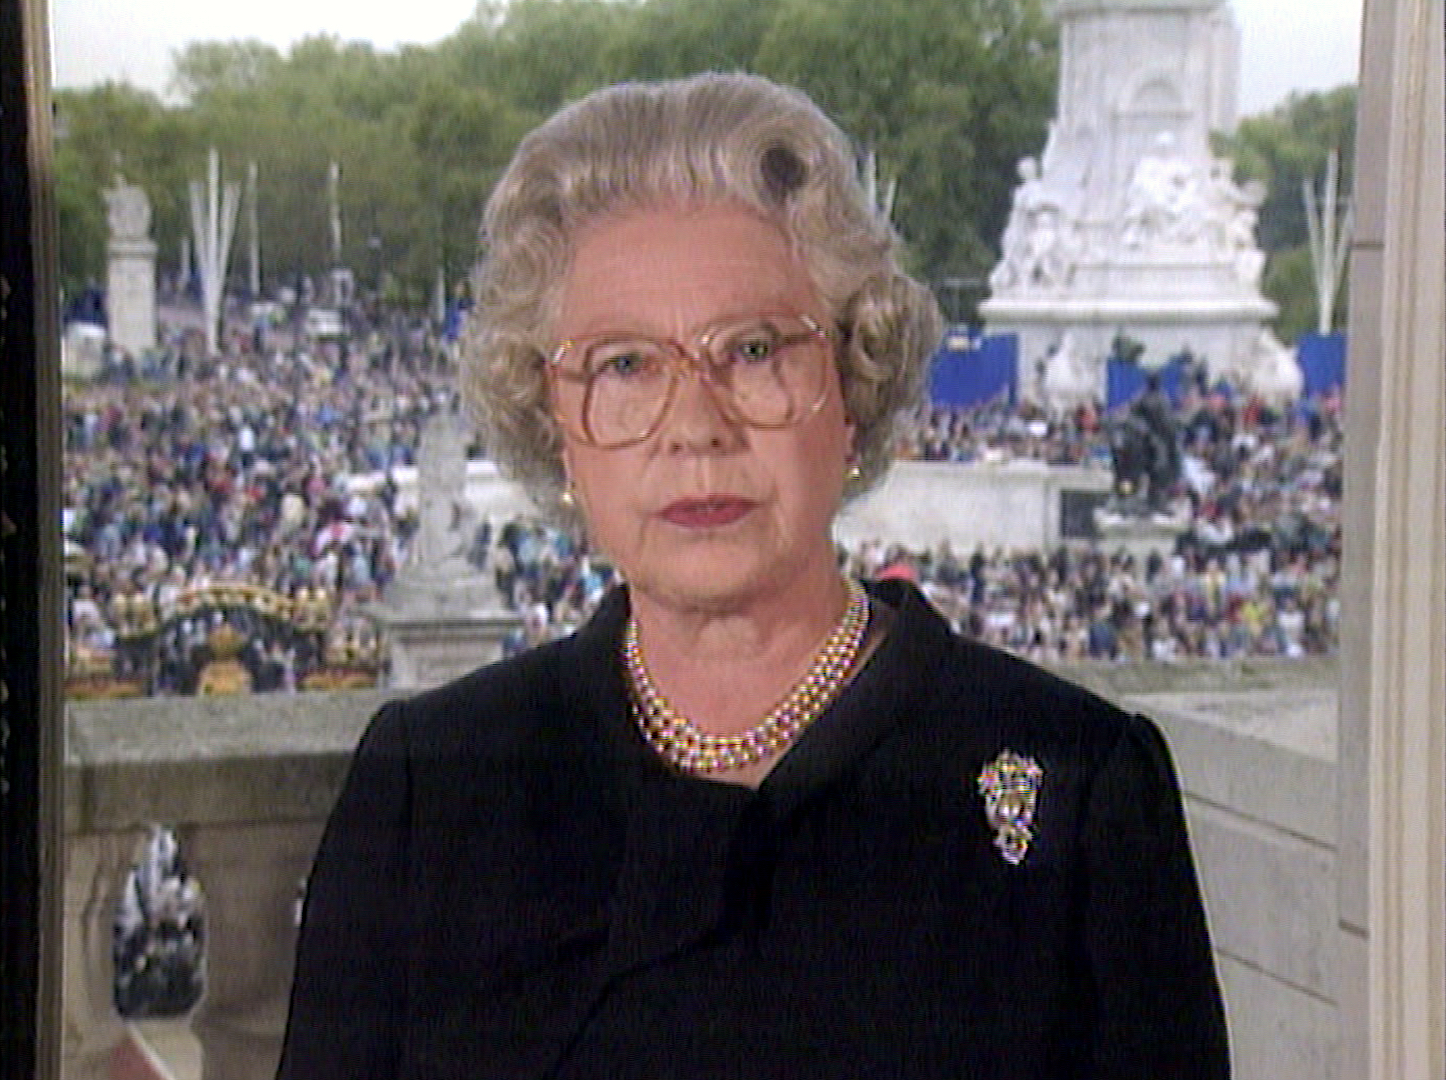 追悼上映・英国エリザベス女王の初の長編ドキュメンタリー映画『エリザベス 女王陛下の微笑み』9月16日より公開